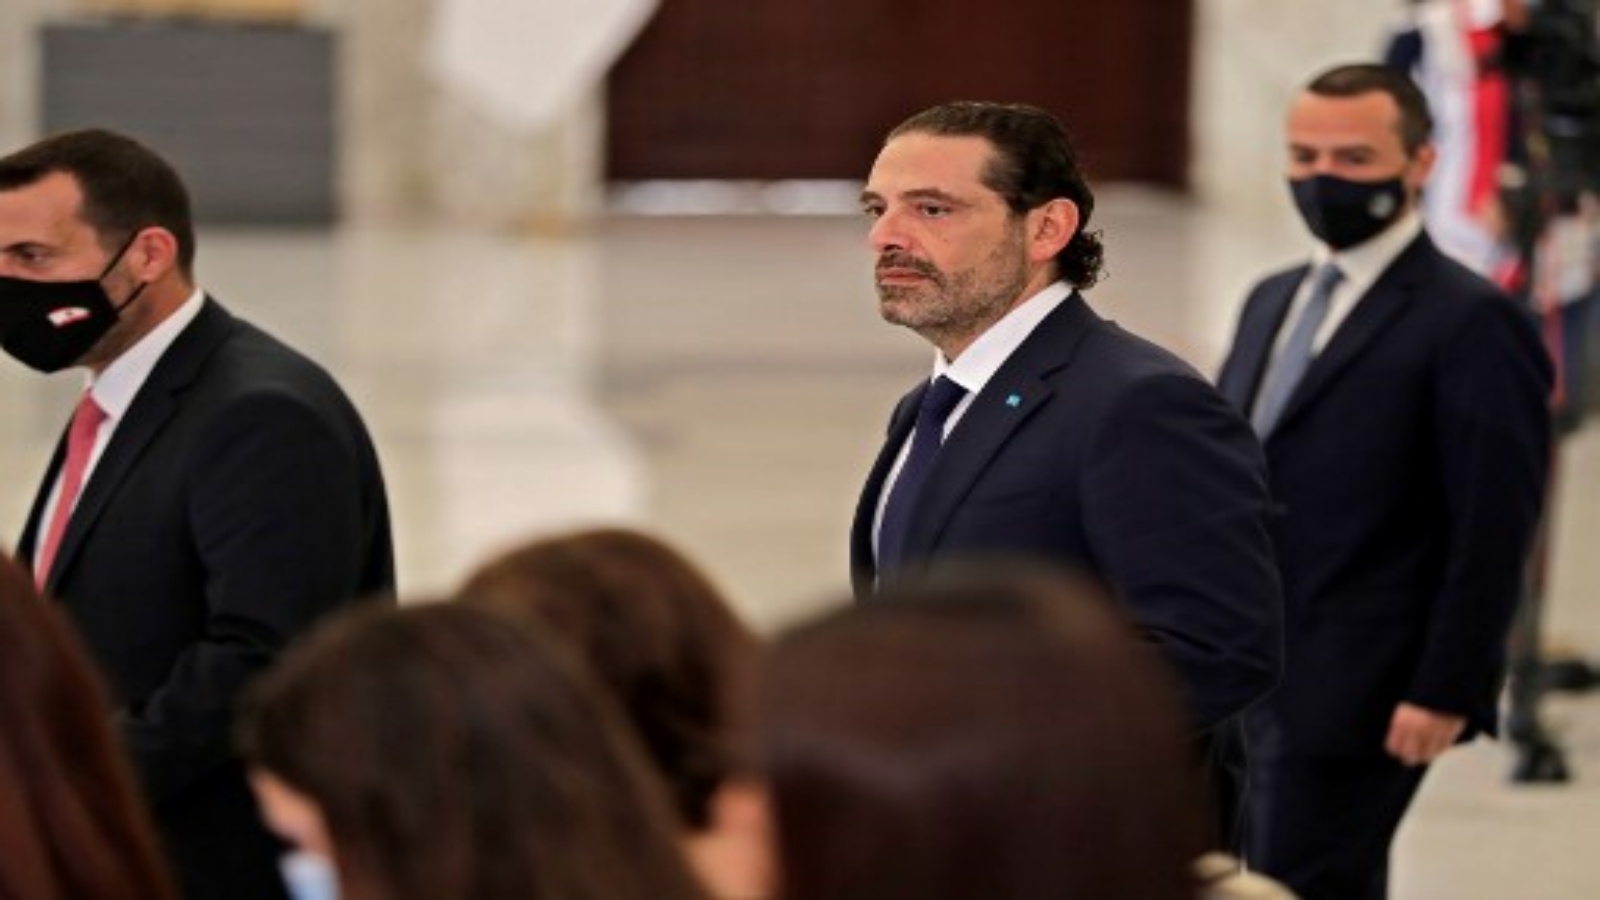 رئيس الوزراء اللبناني الأسبق سعد الحريري (وسط) يصل إلى مكتب الرئيس ميشال عون بعد أن كلّفه الأخير لتشكيل حكومة جديدة ، في القصر الرئاسي في بعبدا ، شرق العاصمة بيروت في 22 تشرين الأول 2020.